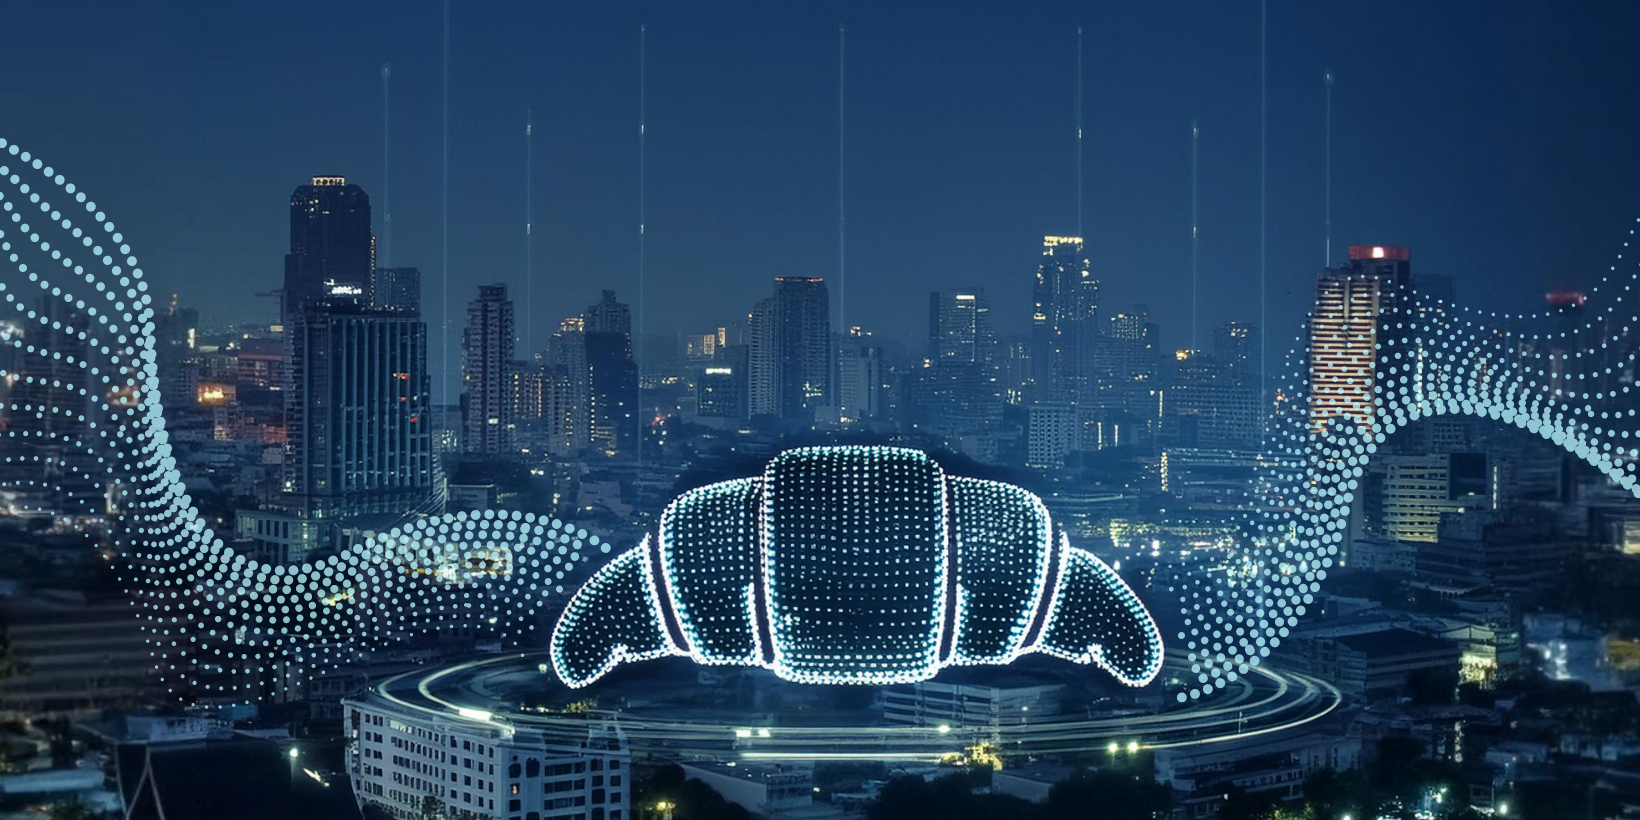 Ein technisch stilisiertes digitales Crosissant vor einer Großstadt bei Nacht, symbolisch für das Thema Smart City